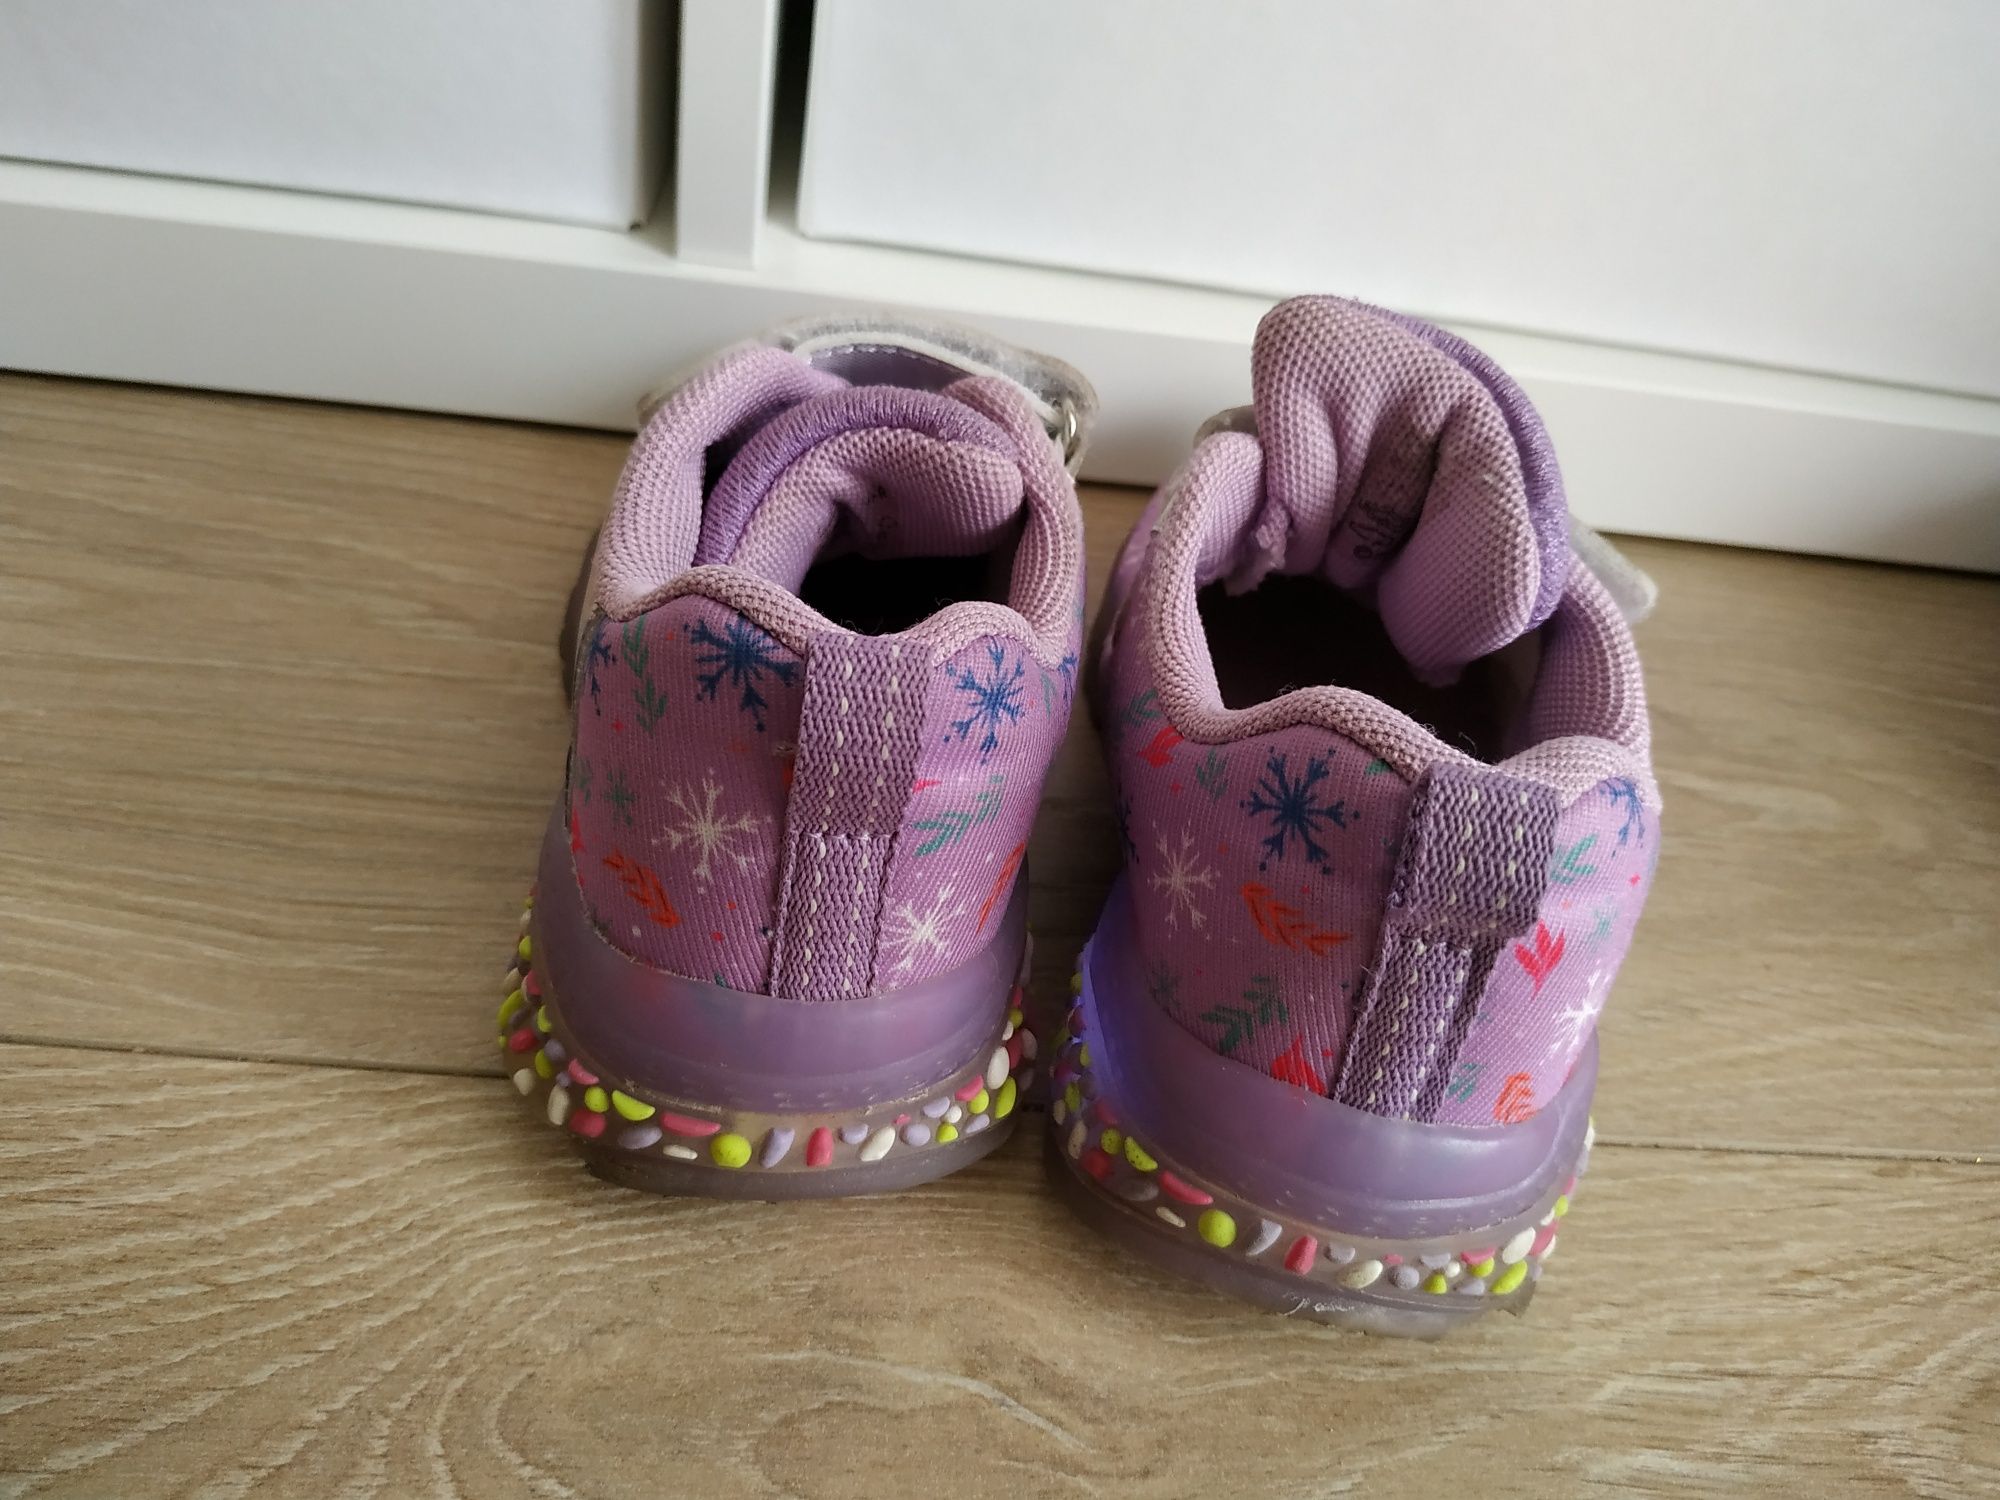 Buty dziewczęce, Frozen, rozmiar 27, wkładka 17 cm